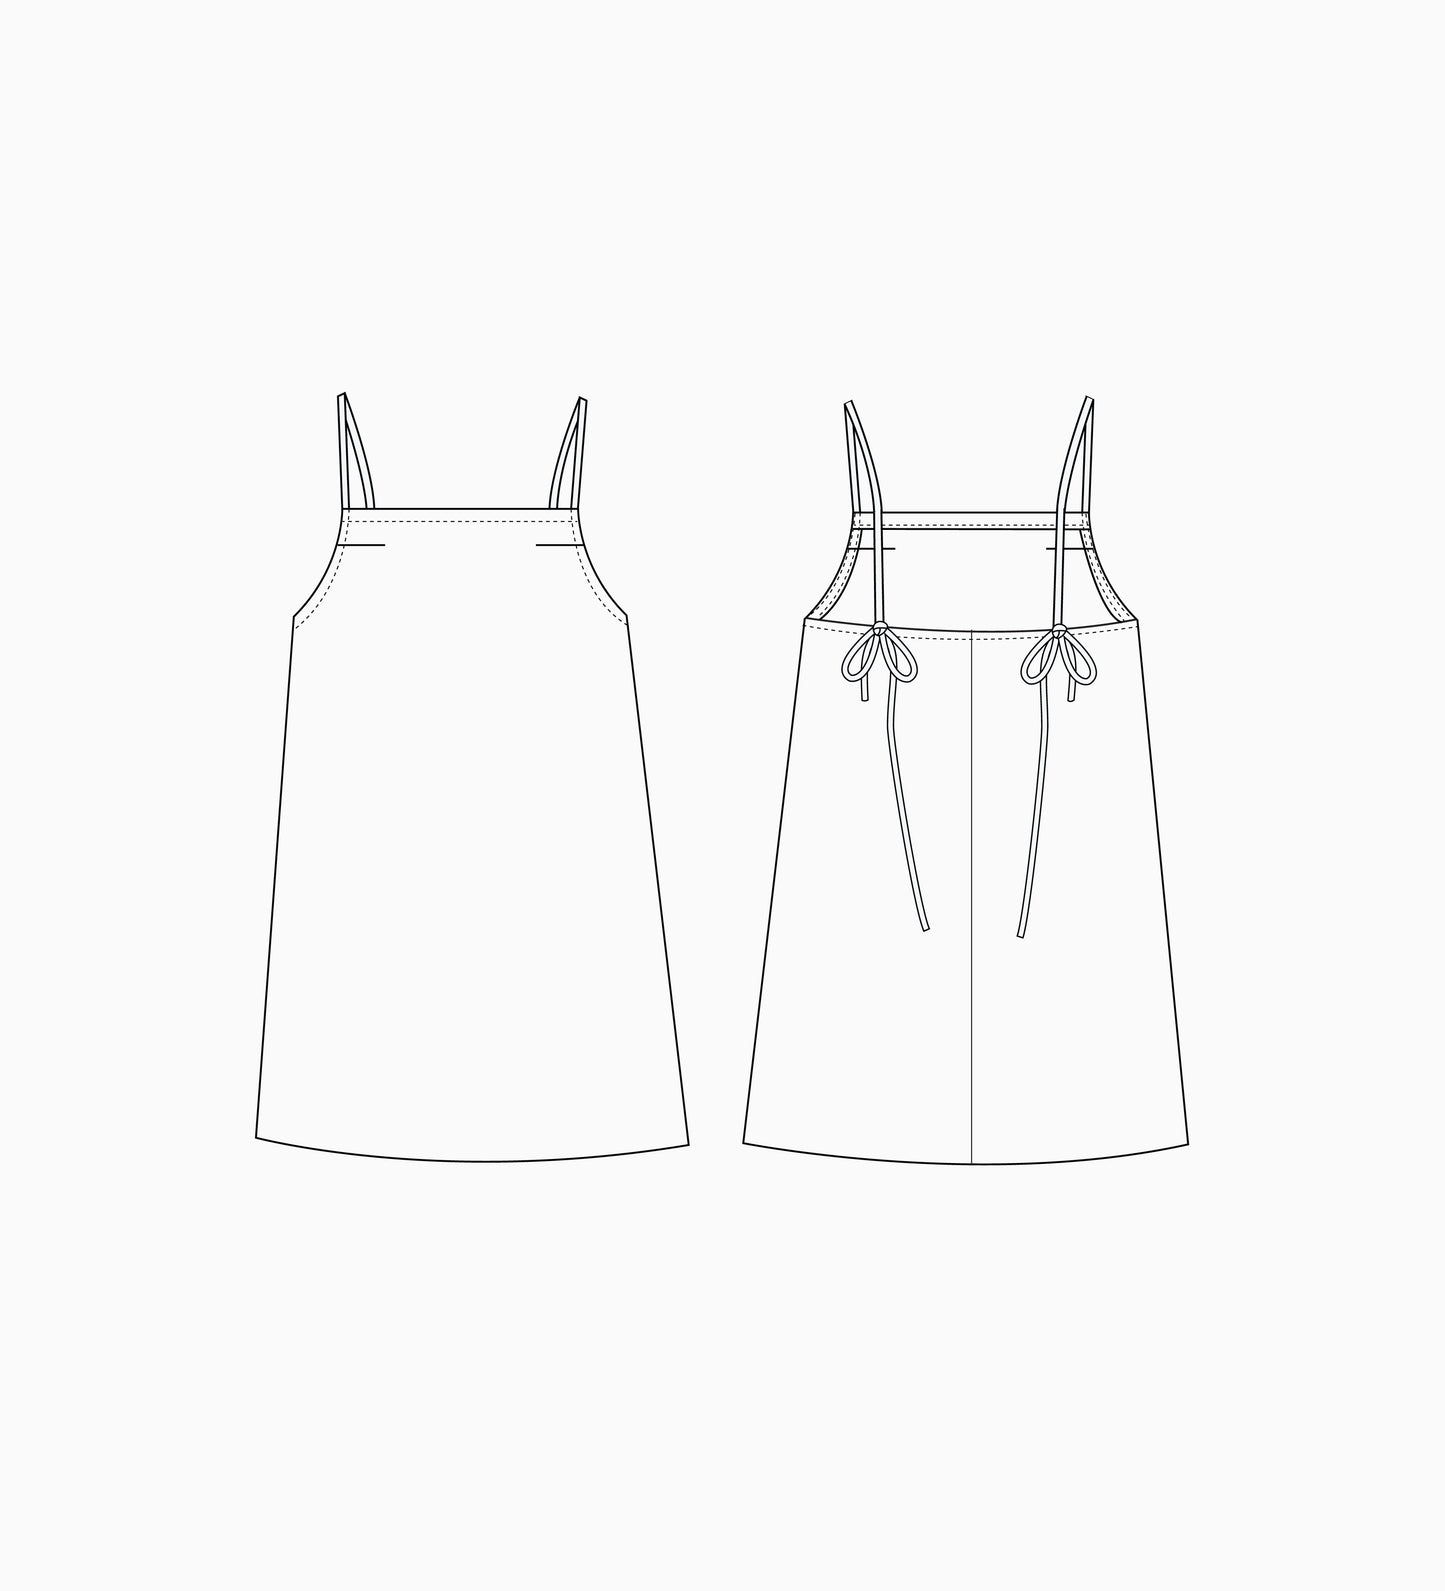 Wattlebird Dress / Cami PAPER Pattern